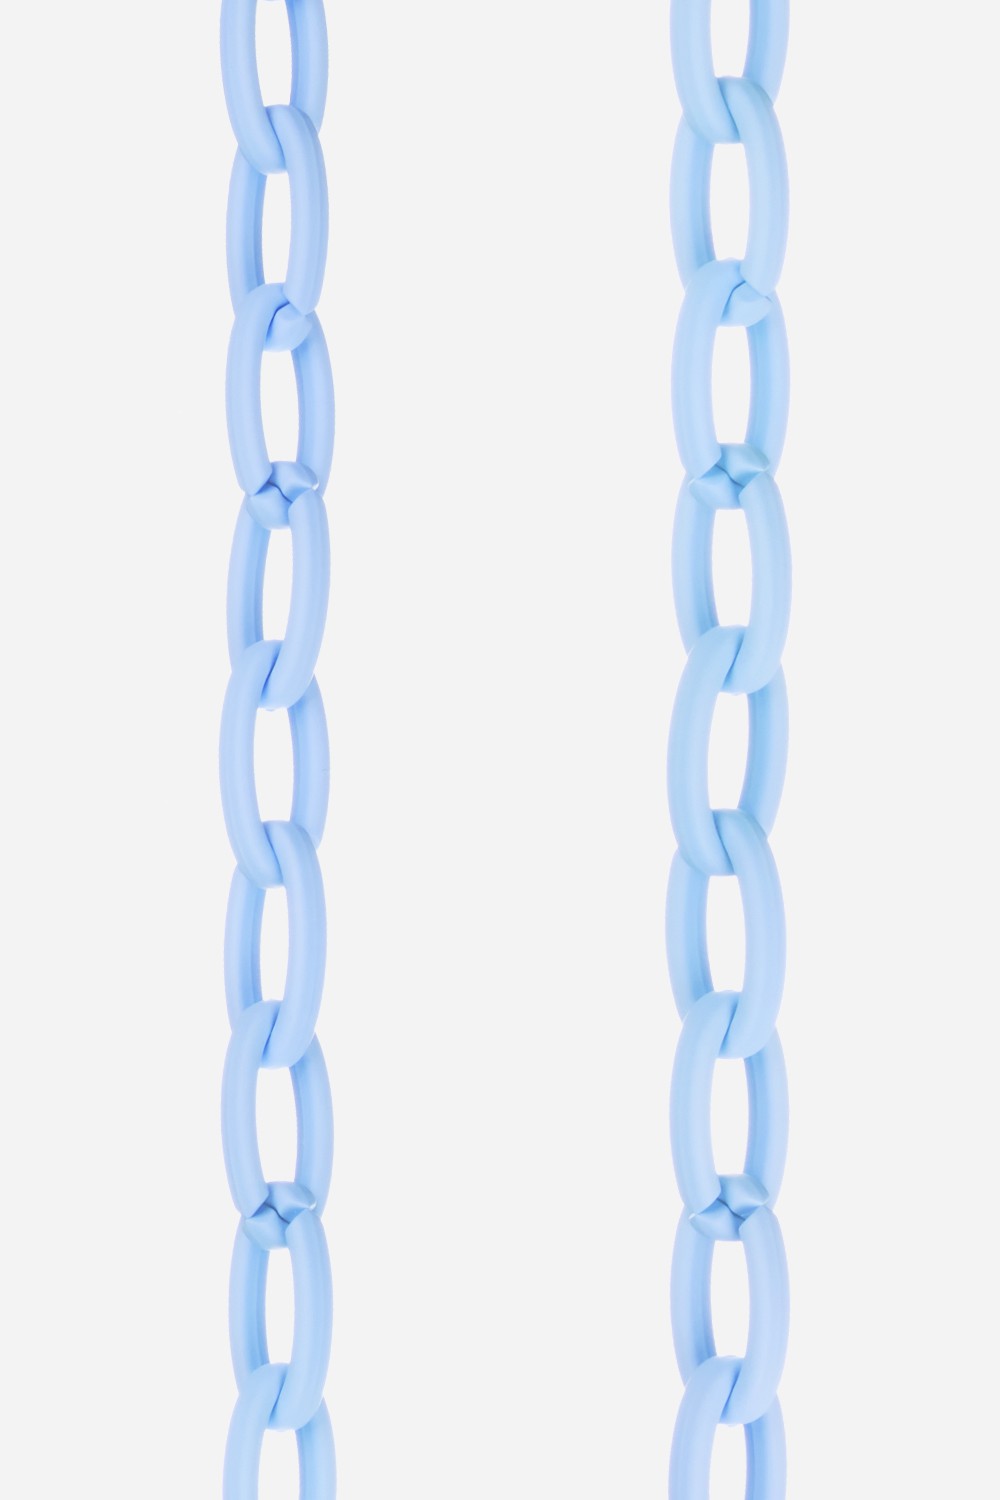 Zoe Long Chain Blue 120 cm